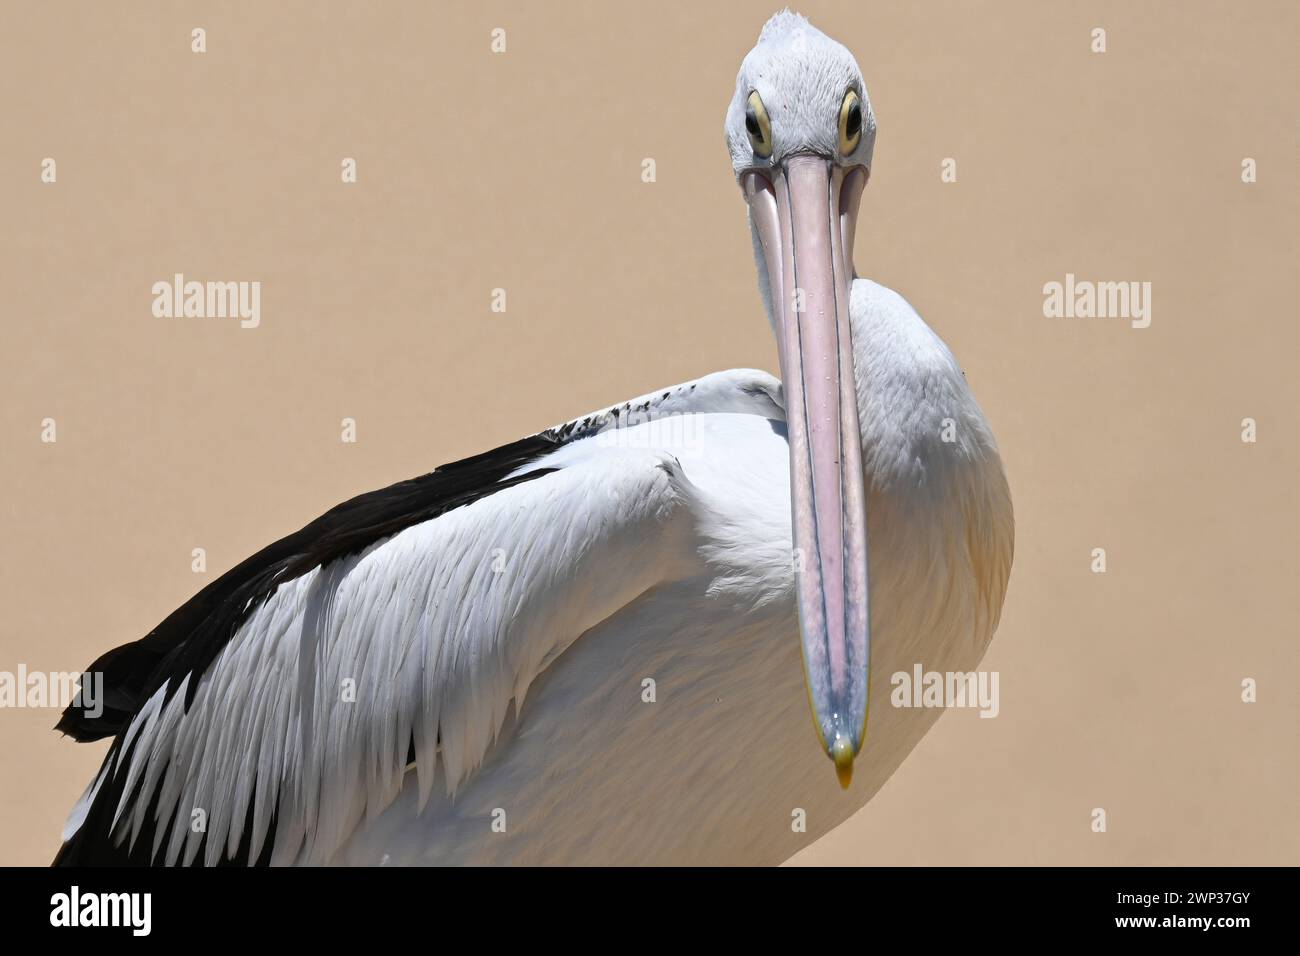 Pelican in Australia. Le sue caratteristiche distintive, come il lungo becco e la grande apertura alare, sono evidenziate nell'immagine, a dimostrazione della sua bellezza. Foto Stock